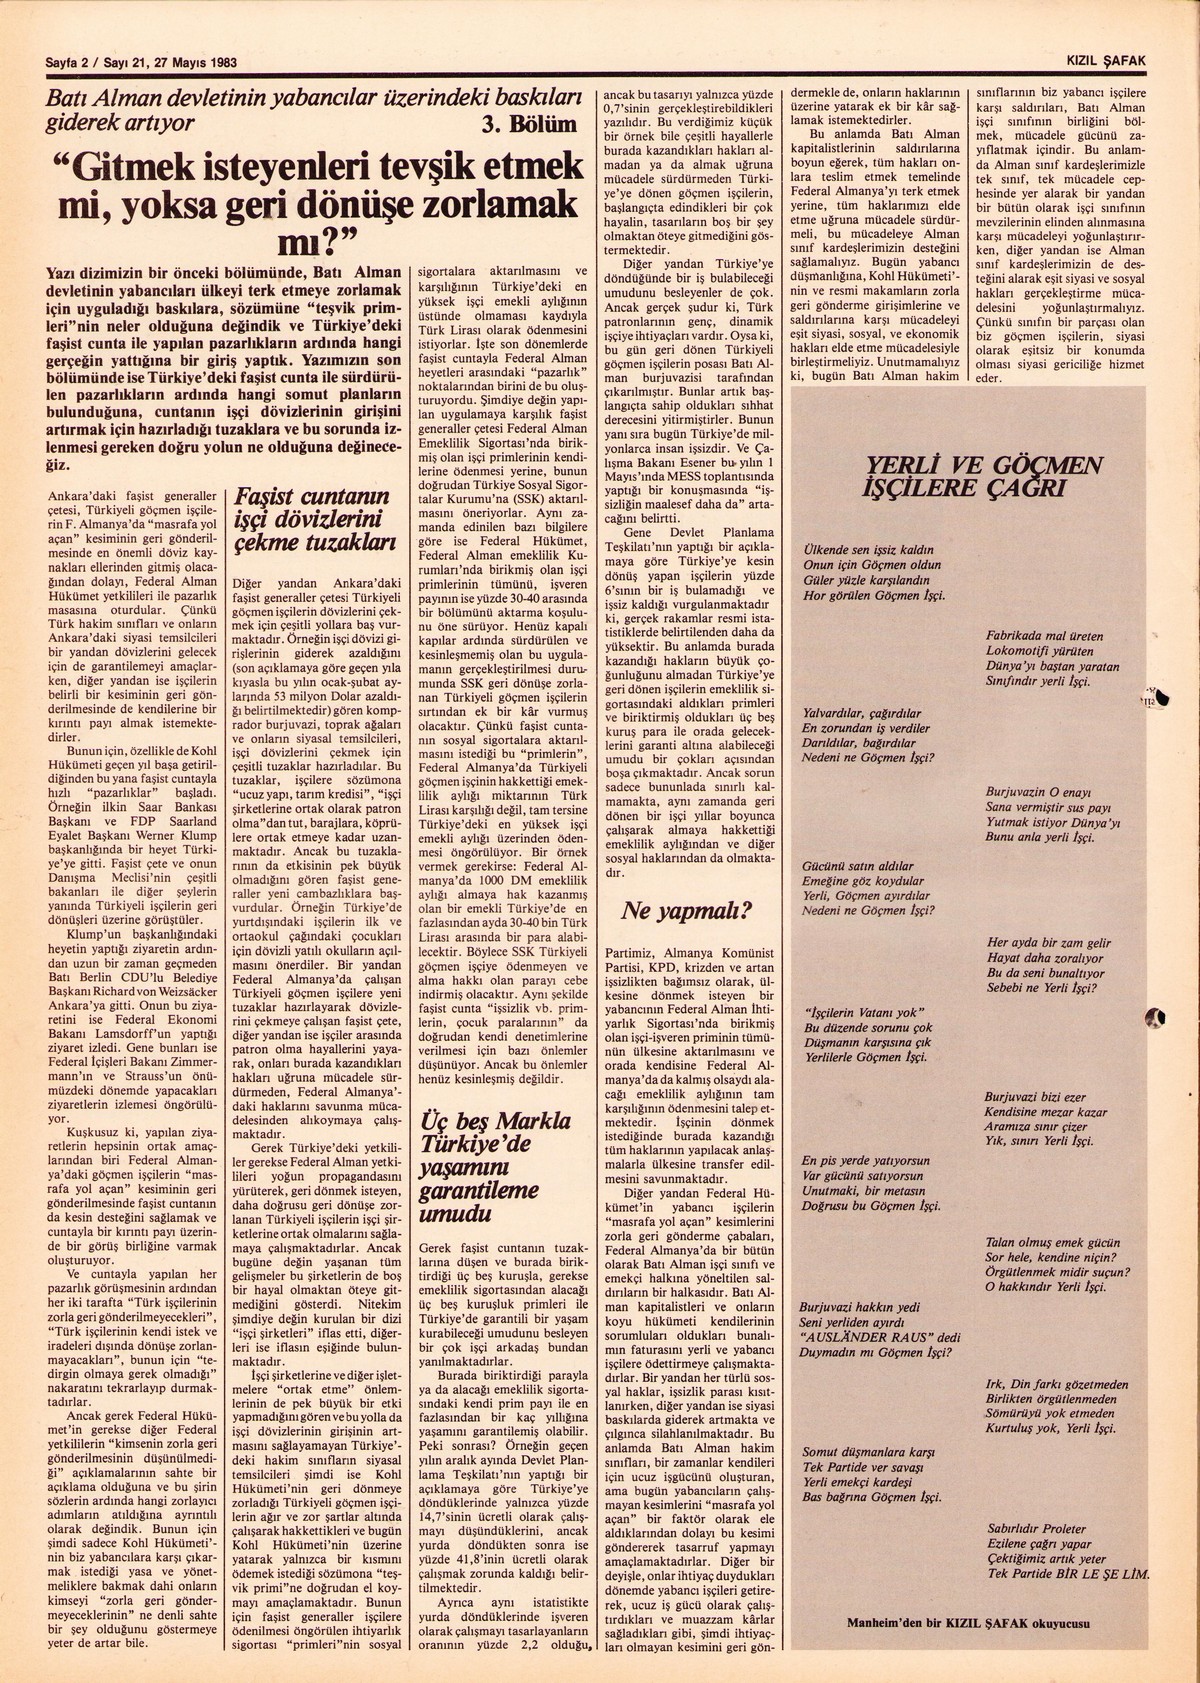 Roter Morgen, 17. Jg., 27. Mai 1983, Nr. 21, Seite 15